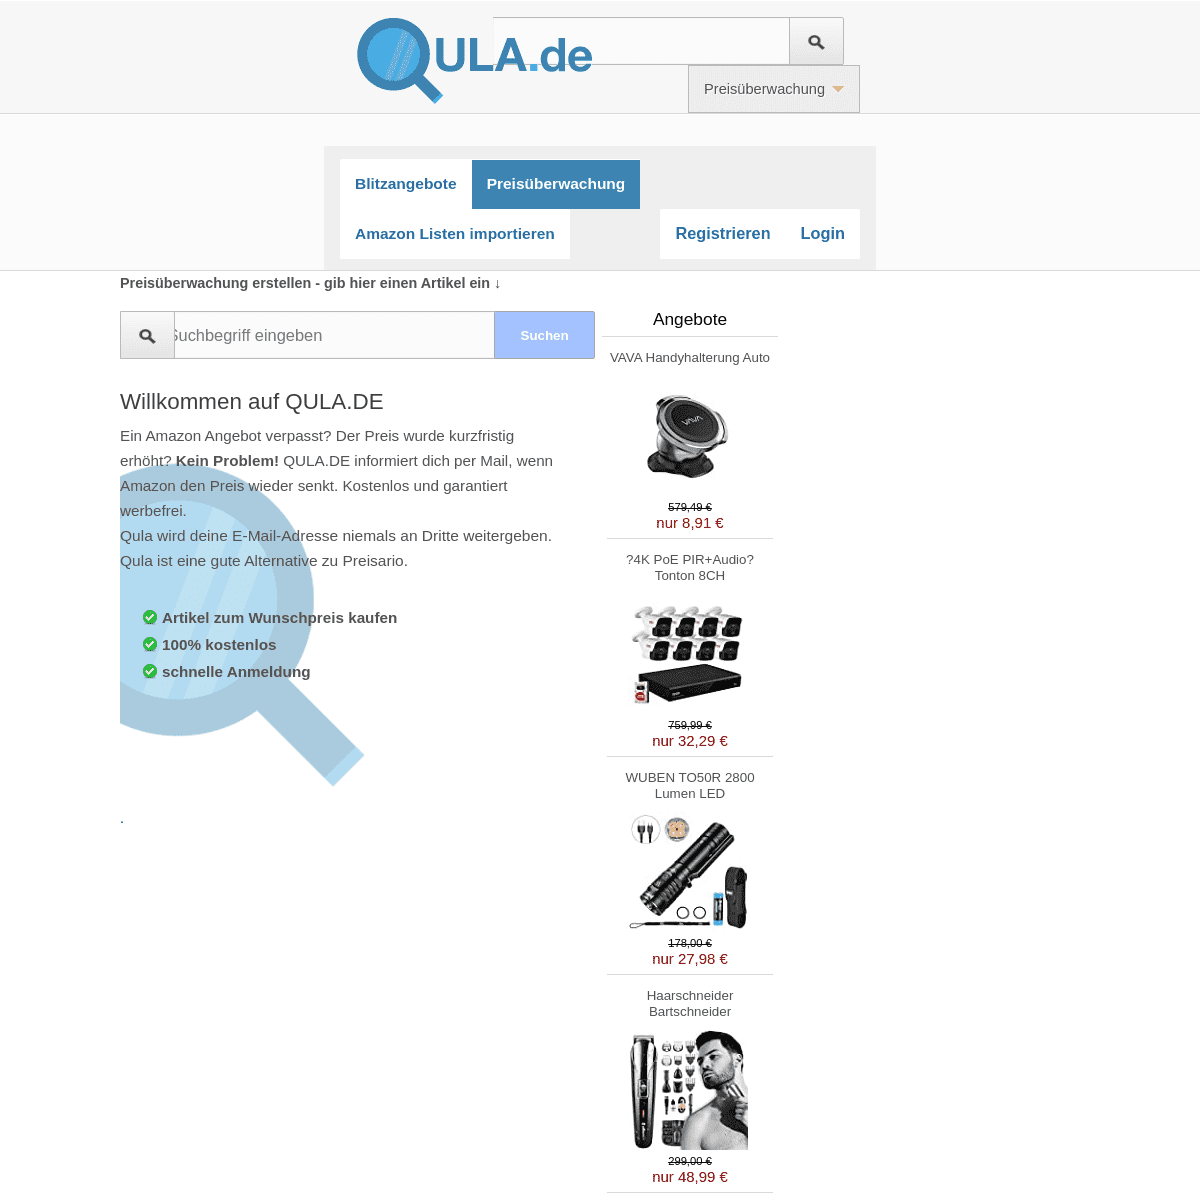 A complete backup of qula.de